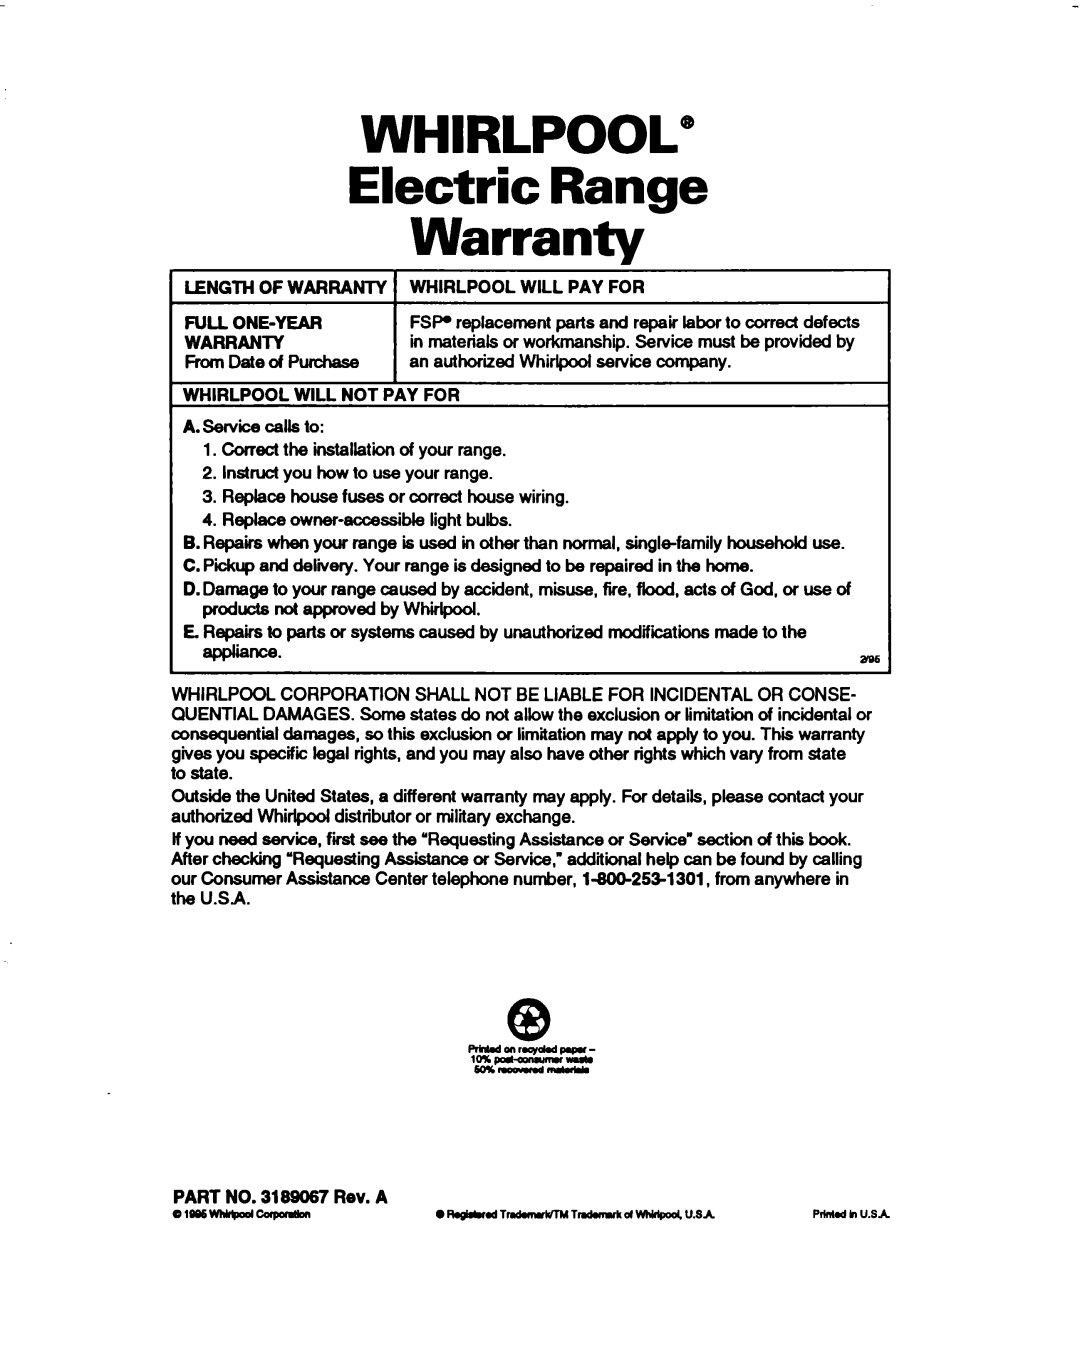 Whirlpool RF330PXD warranty WHIRLPOOL” Electric Range Warranty 